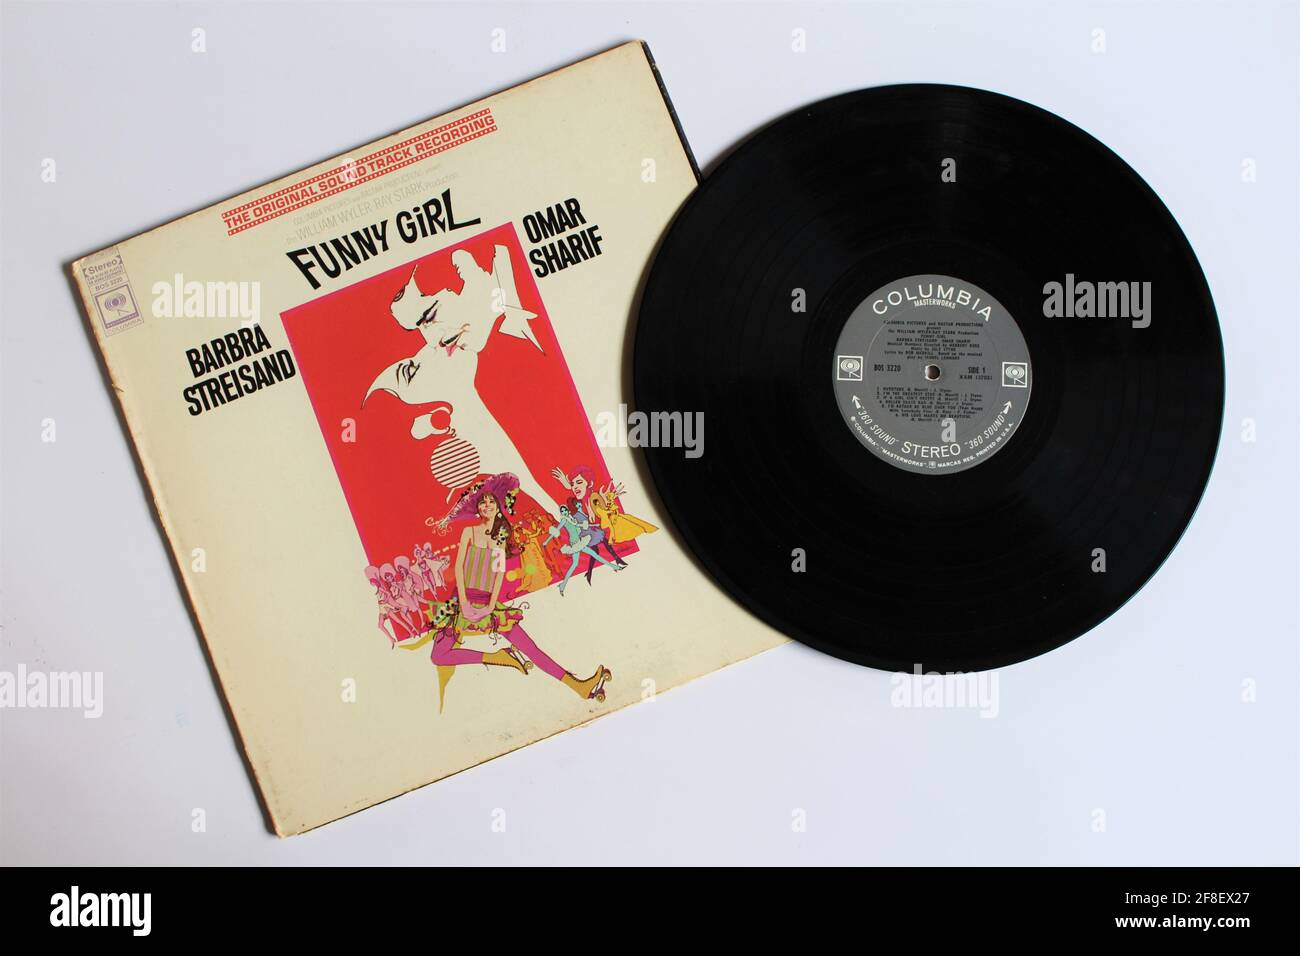 Funny Girl ist ein biografischer, musikalischer Comedy-Drama-Film aus dem Jahr 1968 von William Wyler. Soundtrack-Album auf Vinyl-Schallplatte. Stockfoto